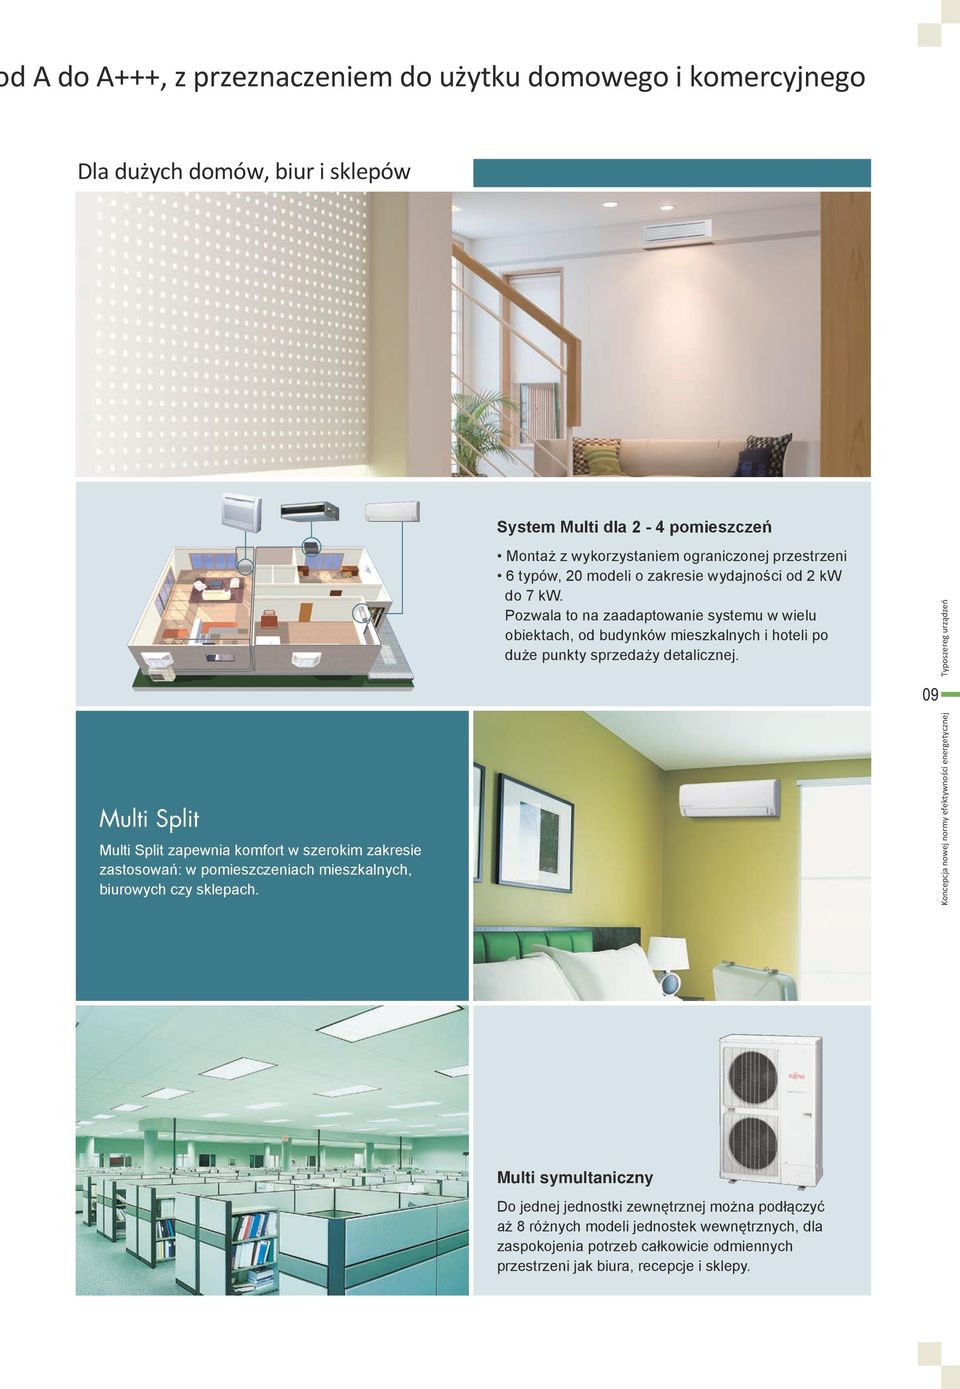 Typoszereg urządzeń System Multi dla 2-4 pomieszczeń Multi Split zapewnia komfort w szerokim zakresie zastosowań: w pomieszczeniach mieszkalnych, biurowych czy sklepach.